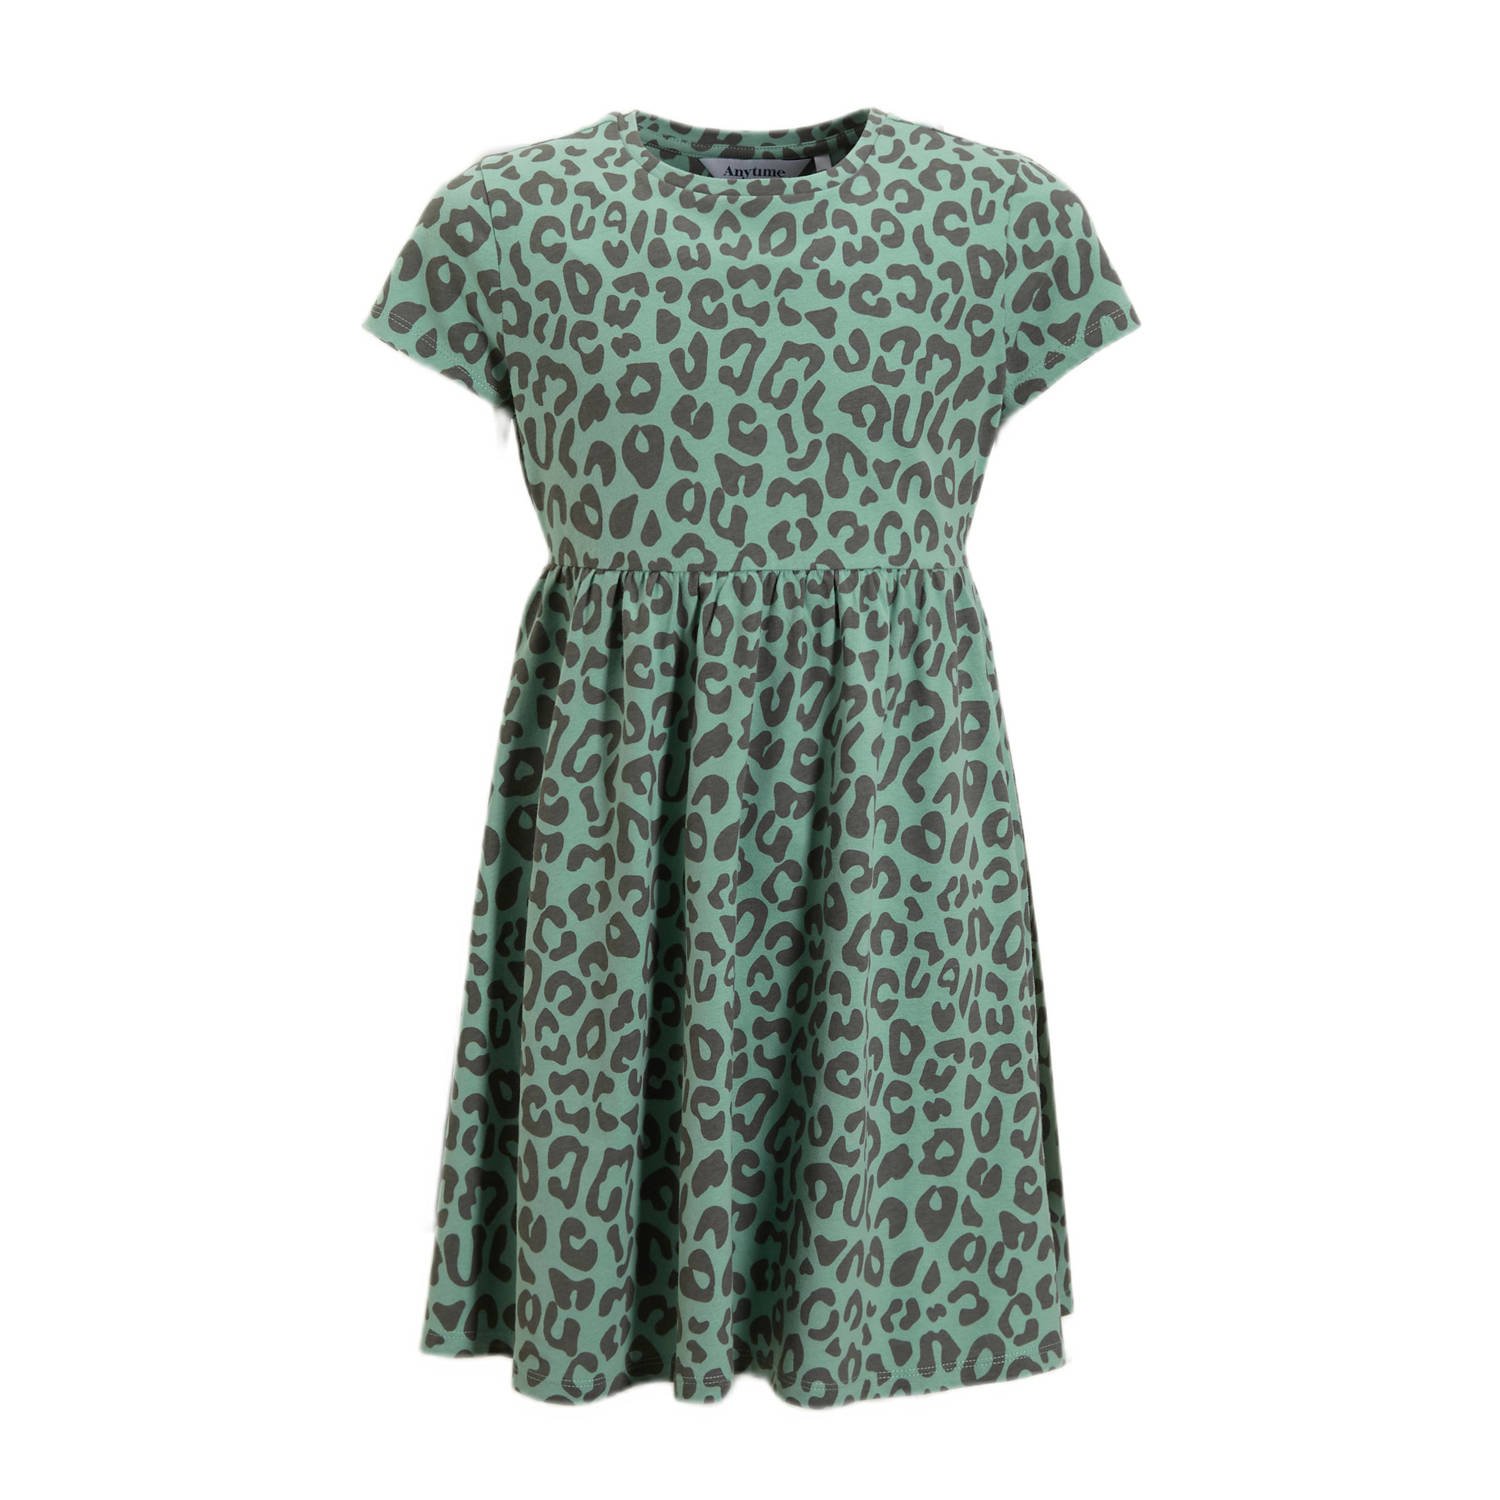 anytime jurk met panterprint groen